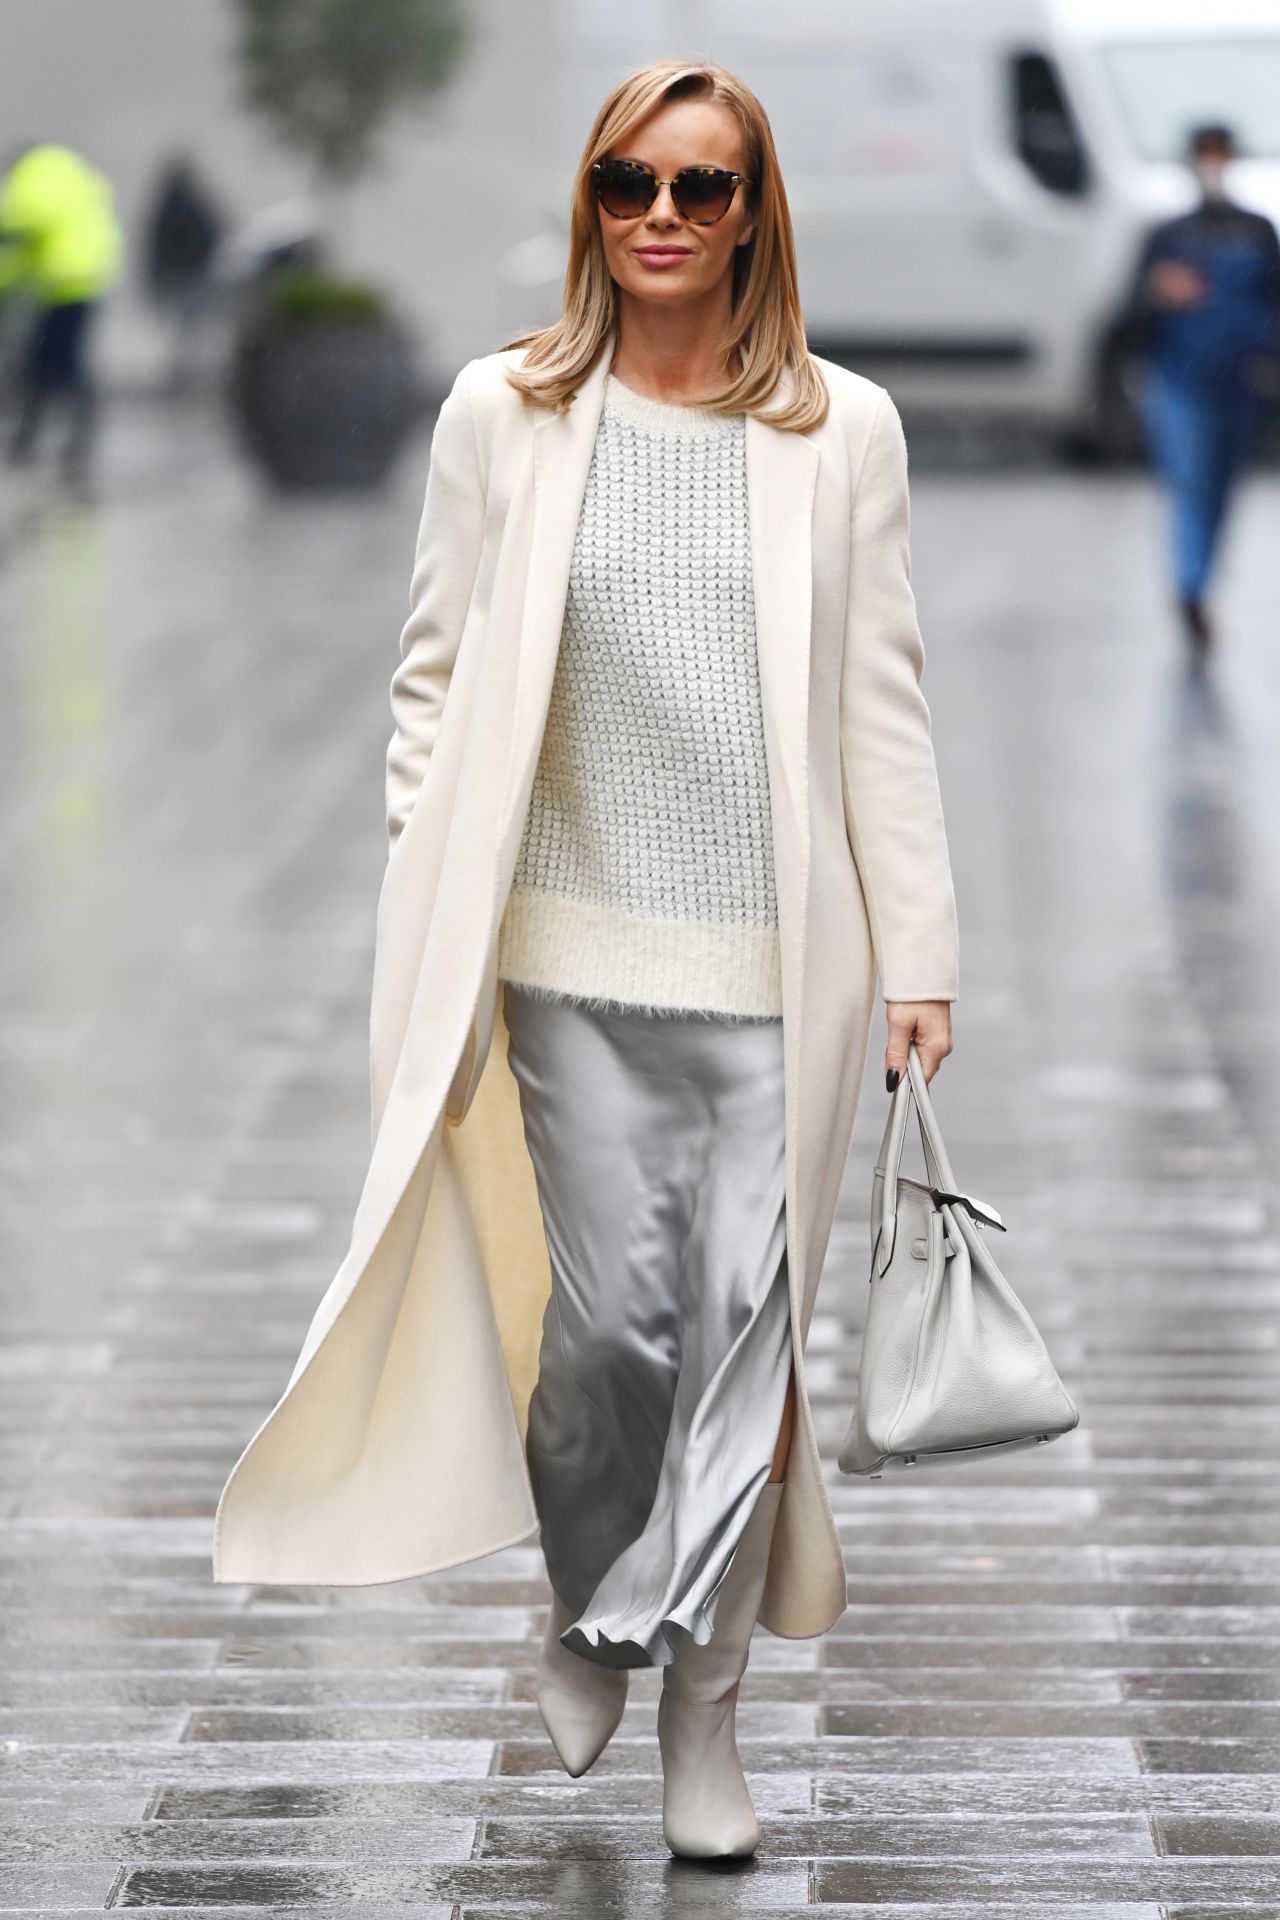 Amanda Holden in White Coat and Silver Skirt 12/04/2020 • CelebMafia